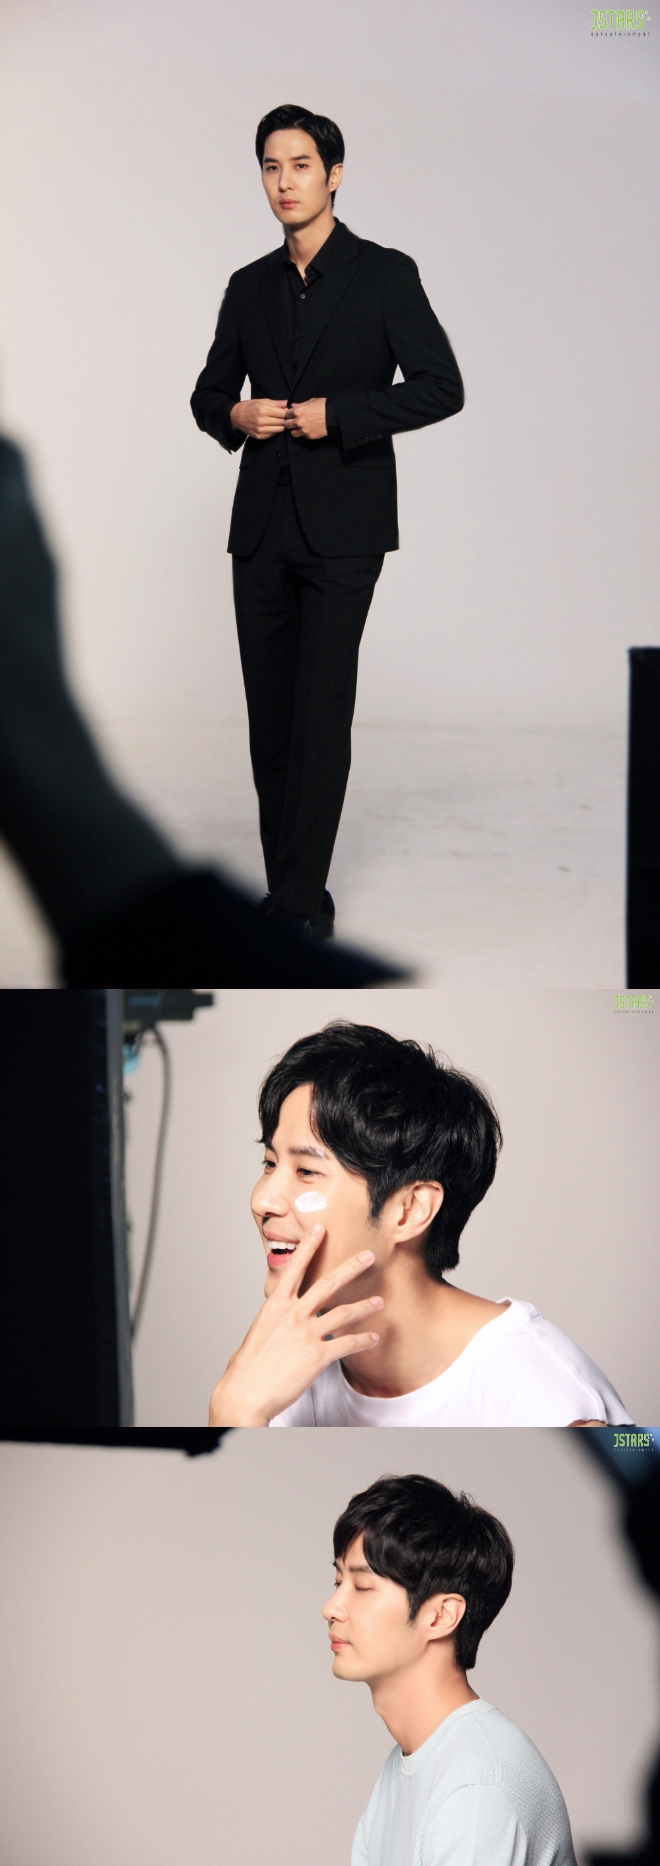 배우 김지석의 상큼한 미소가 돋보이는 3색 매력이 담긴 비하인드 컷이 23일 공개돼 여심을 저격했다. 사진=제이스타즈 엔터테인먼트 제공